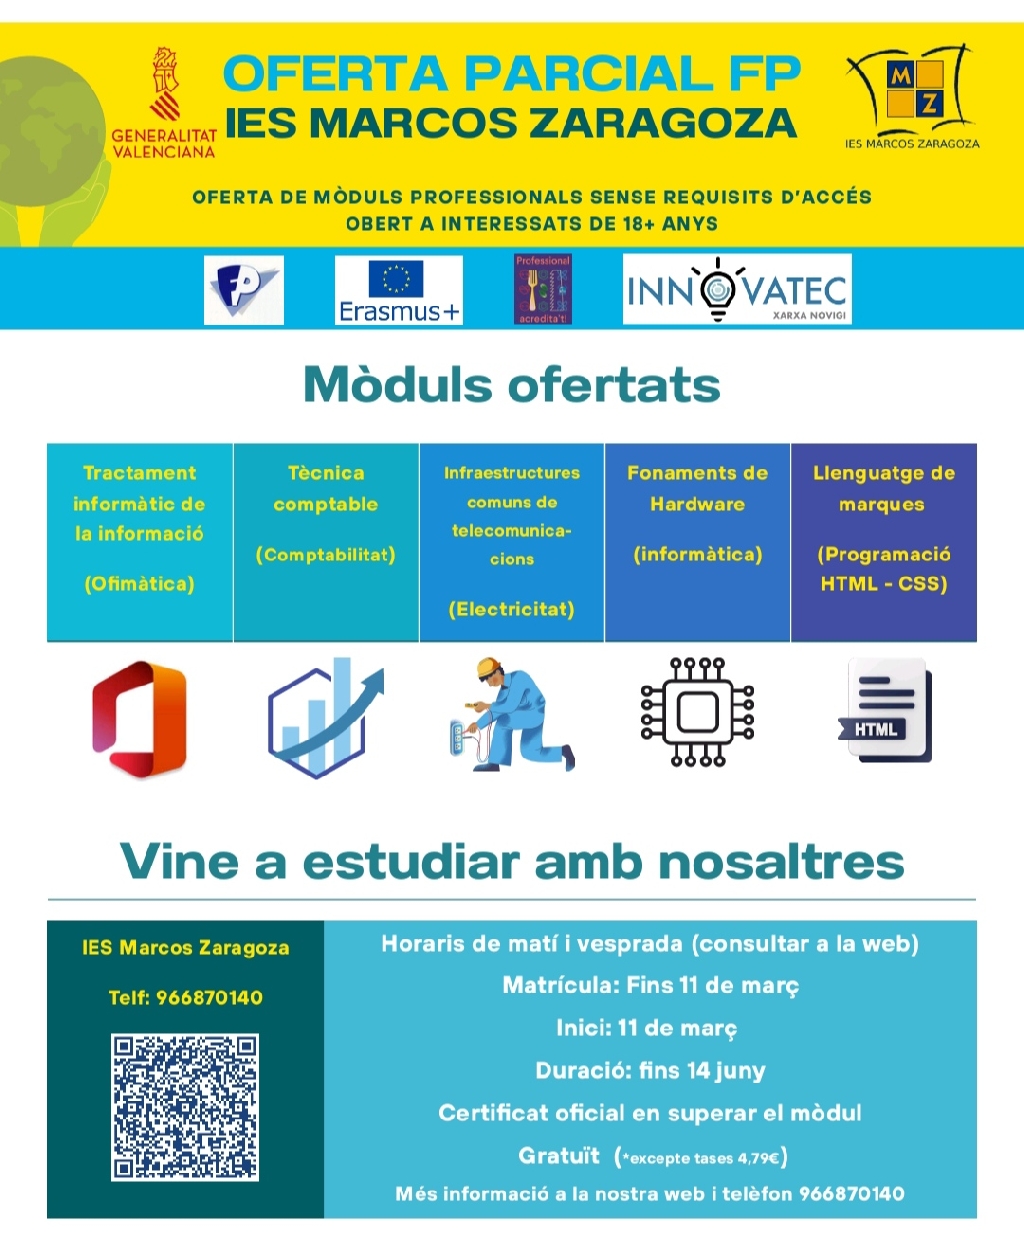 L'IES Marcos Zaragoza ofereix cursar mòduls solts dels cicles de Formació Professional a adults